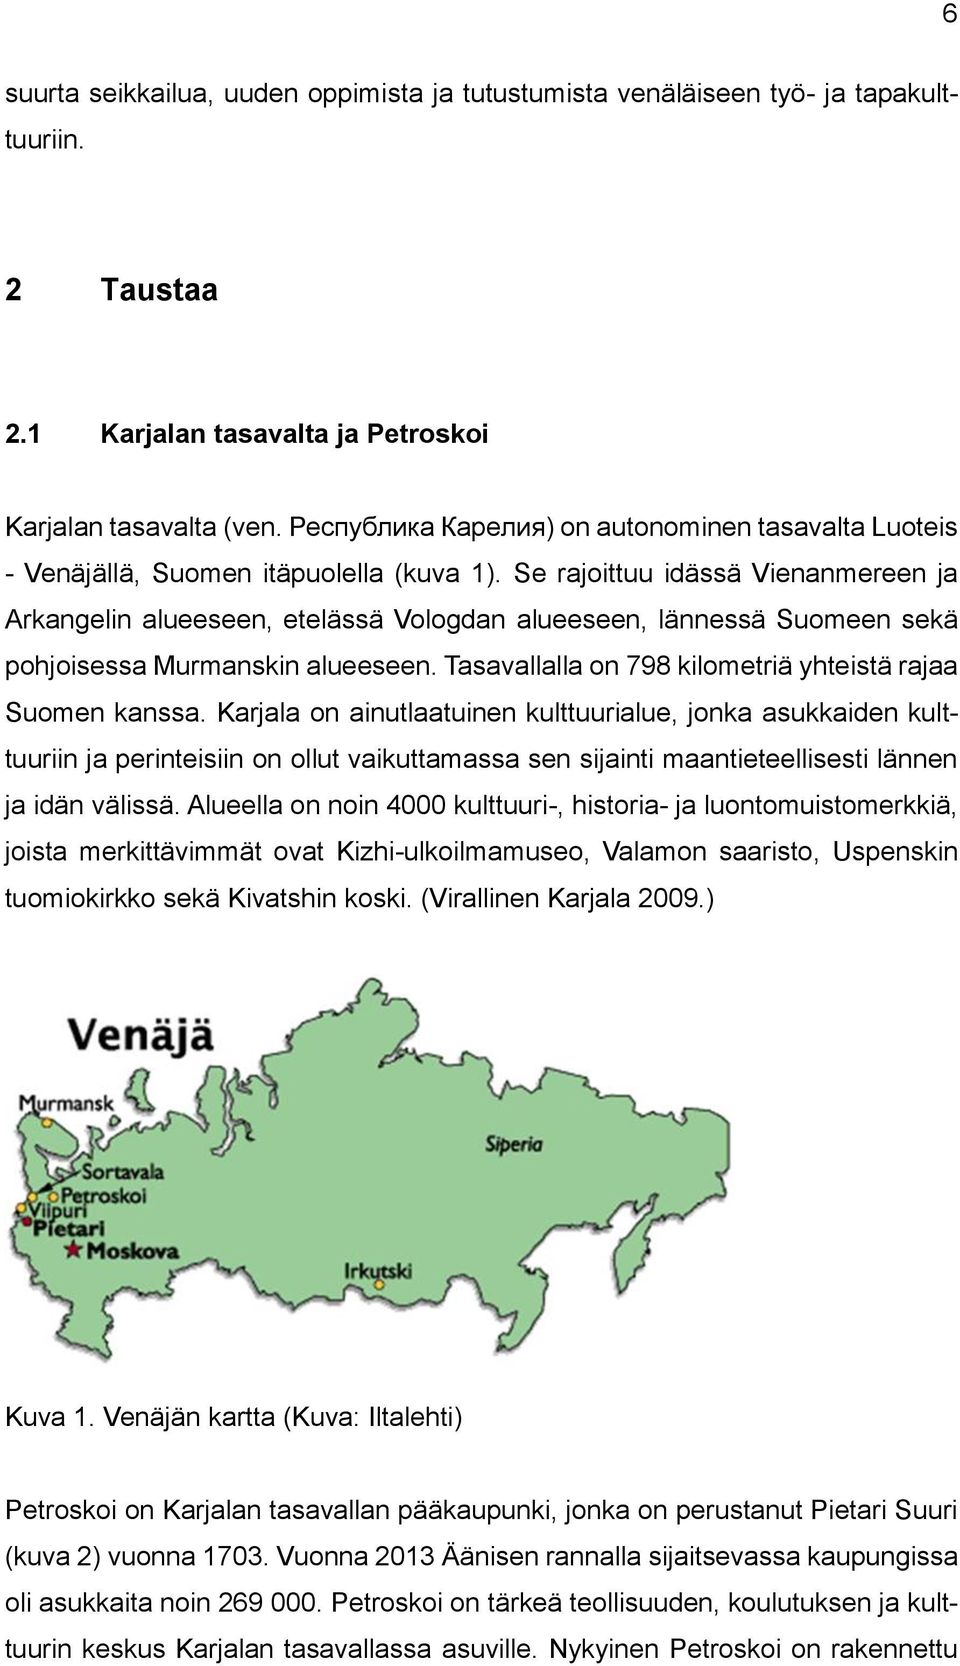 Se rajoittuu idässä Vienanmereen ja Arkangelin alueeseen, etelässä Vologdan alueeseen, lännessä Suomeen sekä pohjoisessa Murmanskin alueeseen.